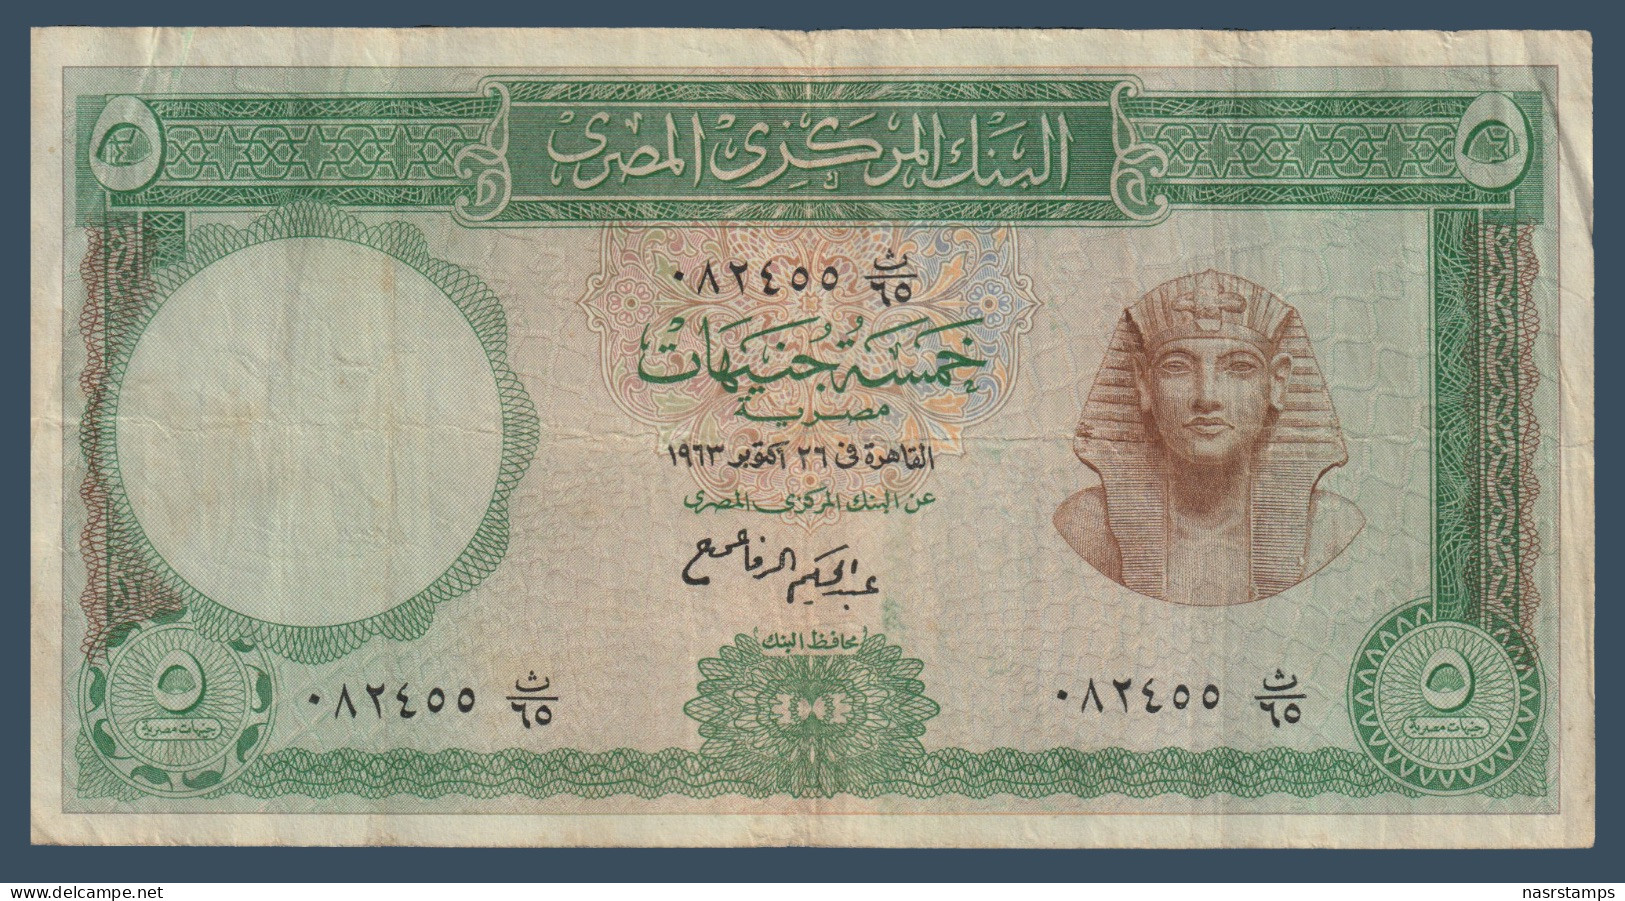 Egypt - 1963 - 5 Pounds - Pick-39 - Sign. #11 - Refay - V.F. - As Scan - Egypt